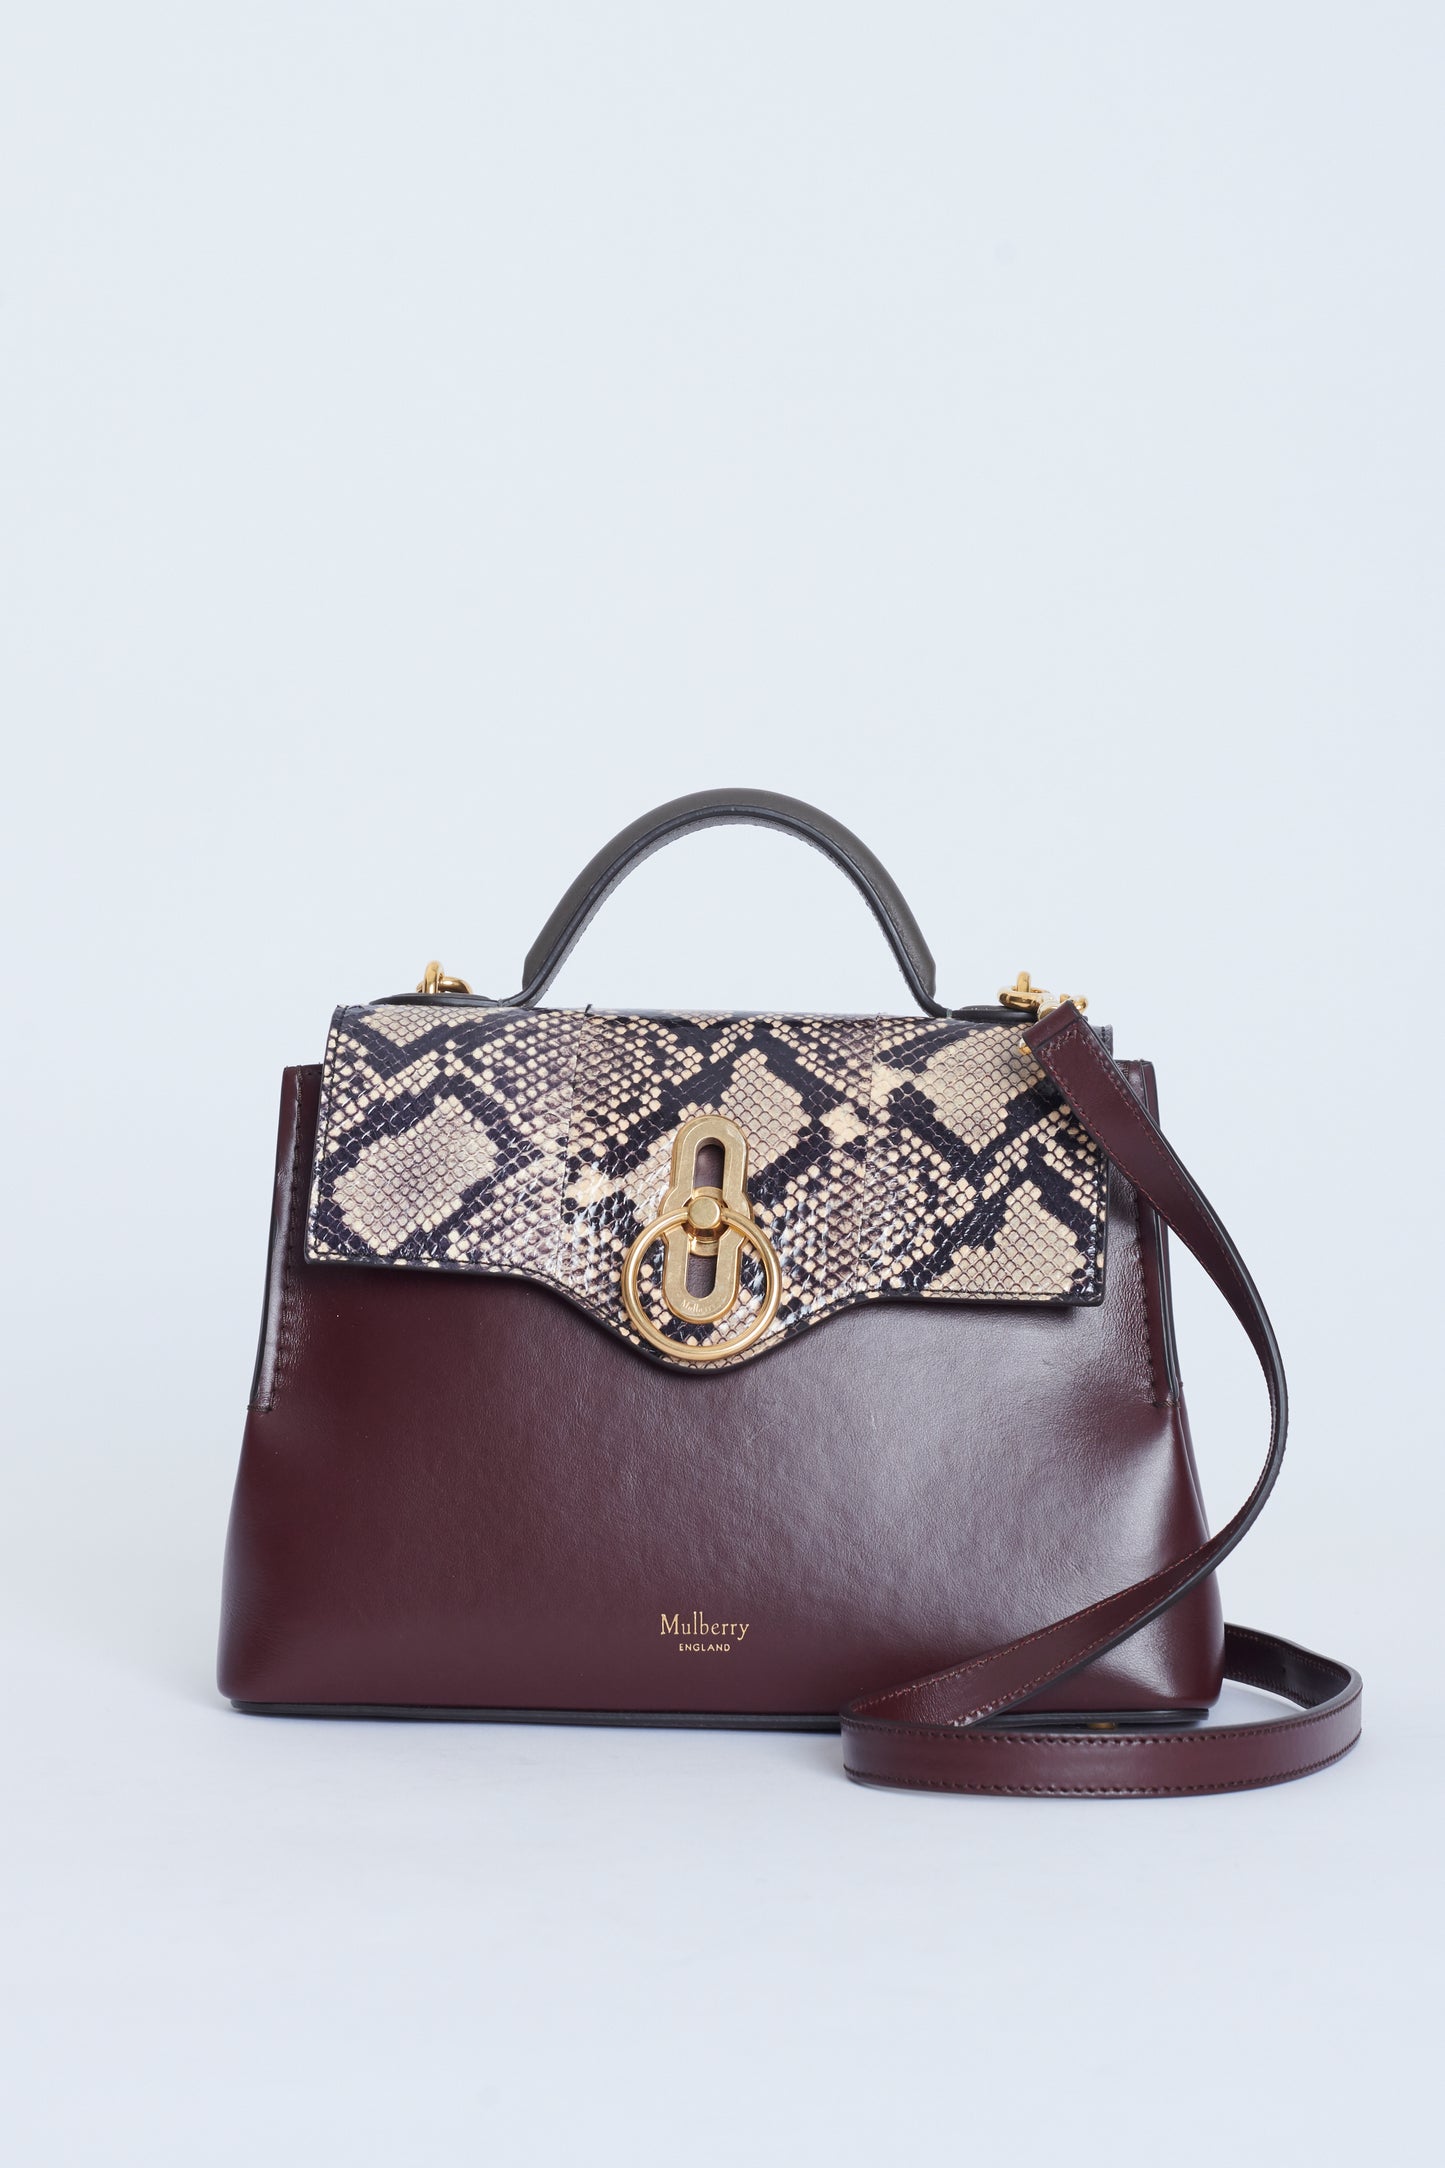 Burgundy Leather And Snake Print Preowned Handbag